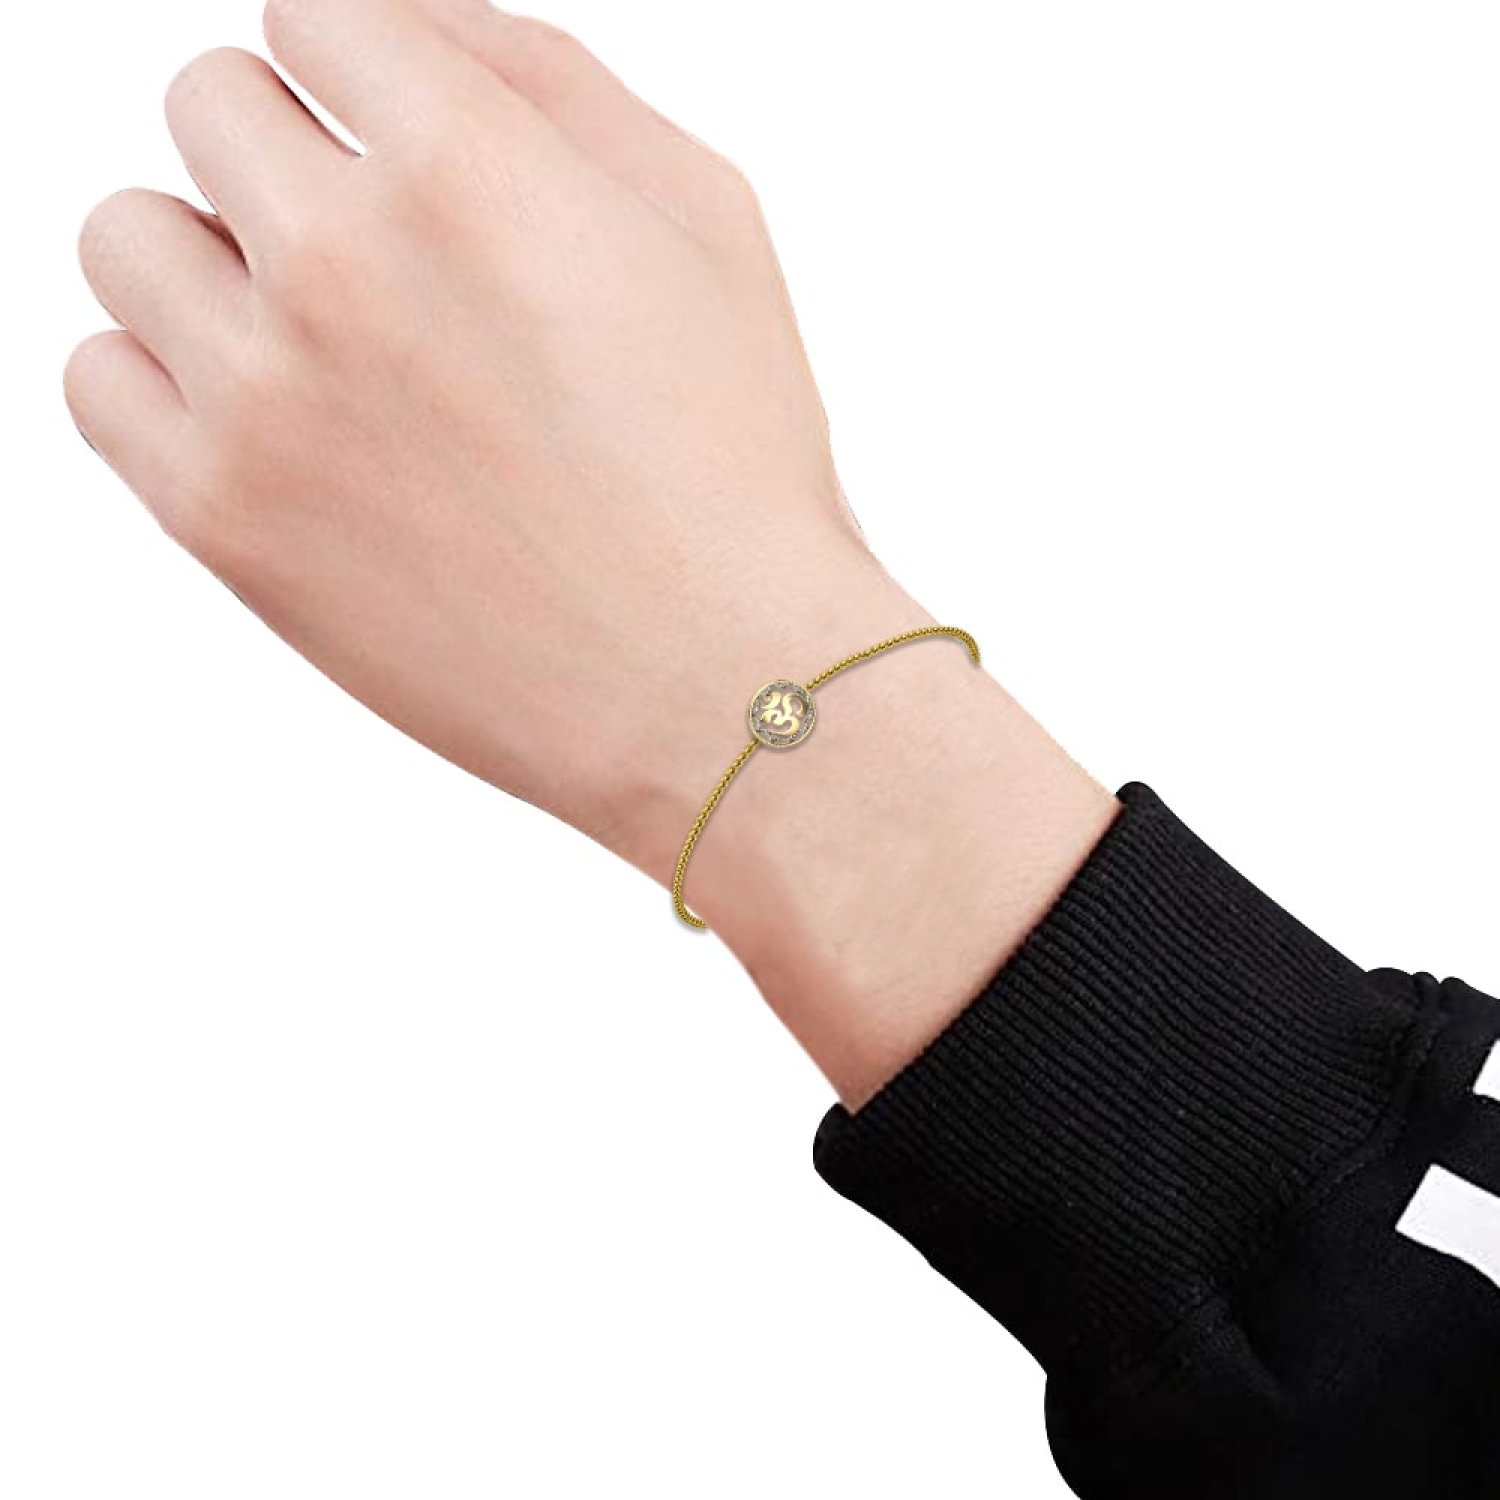 Buy Gold Bracelets - Latest & Trendy Bracelets Designs Online